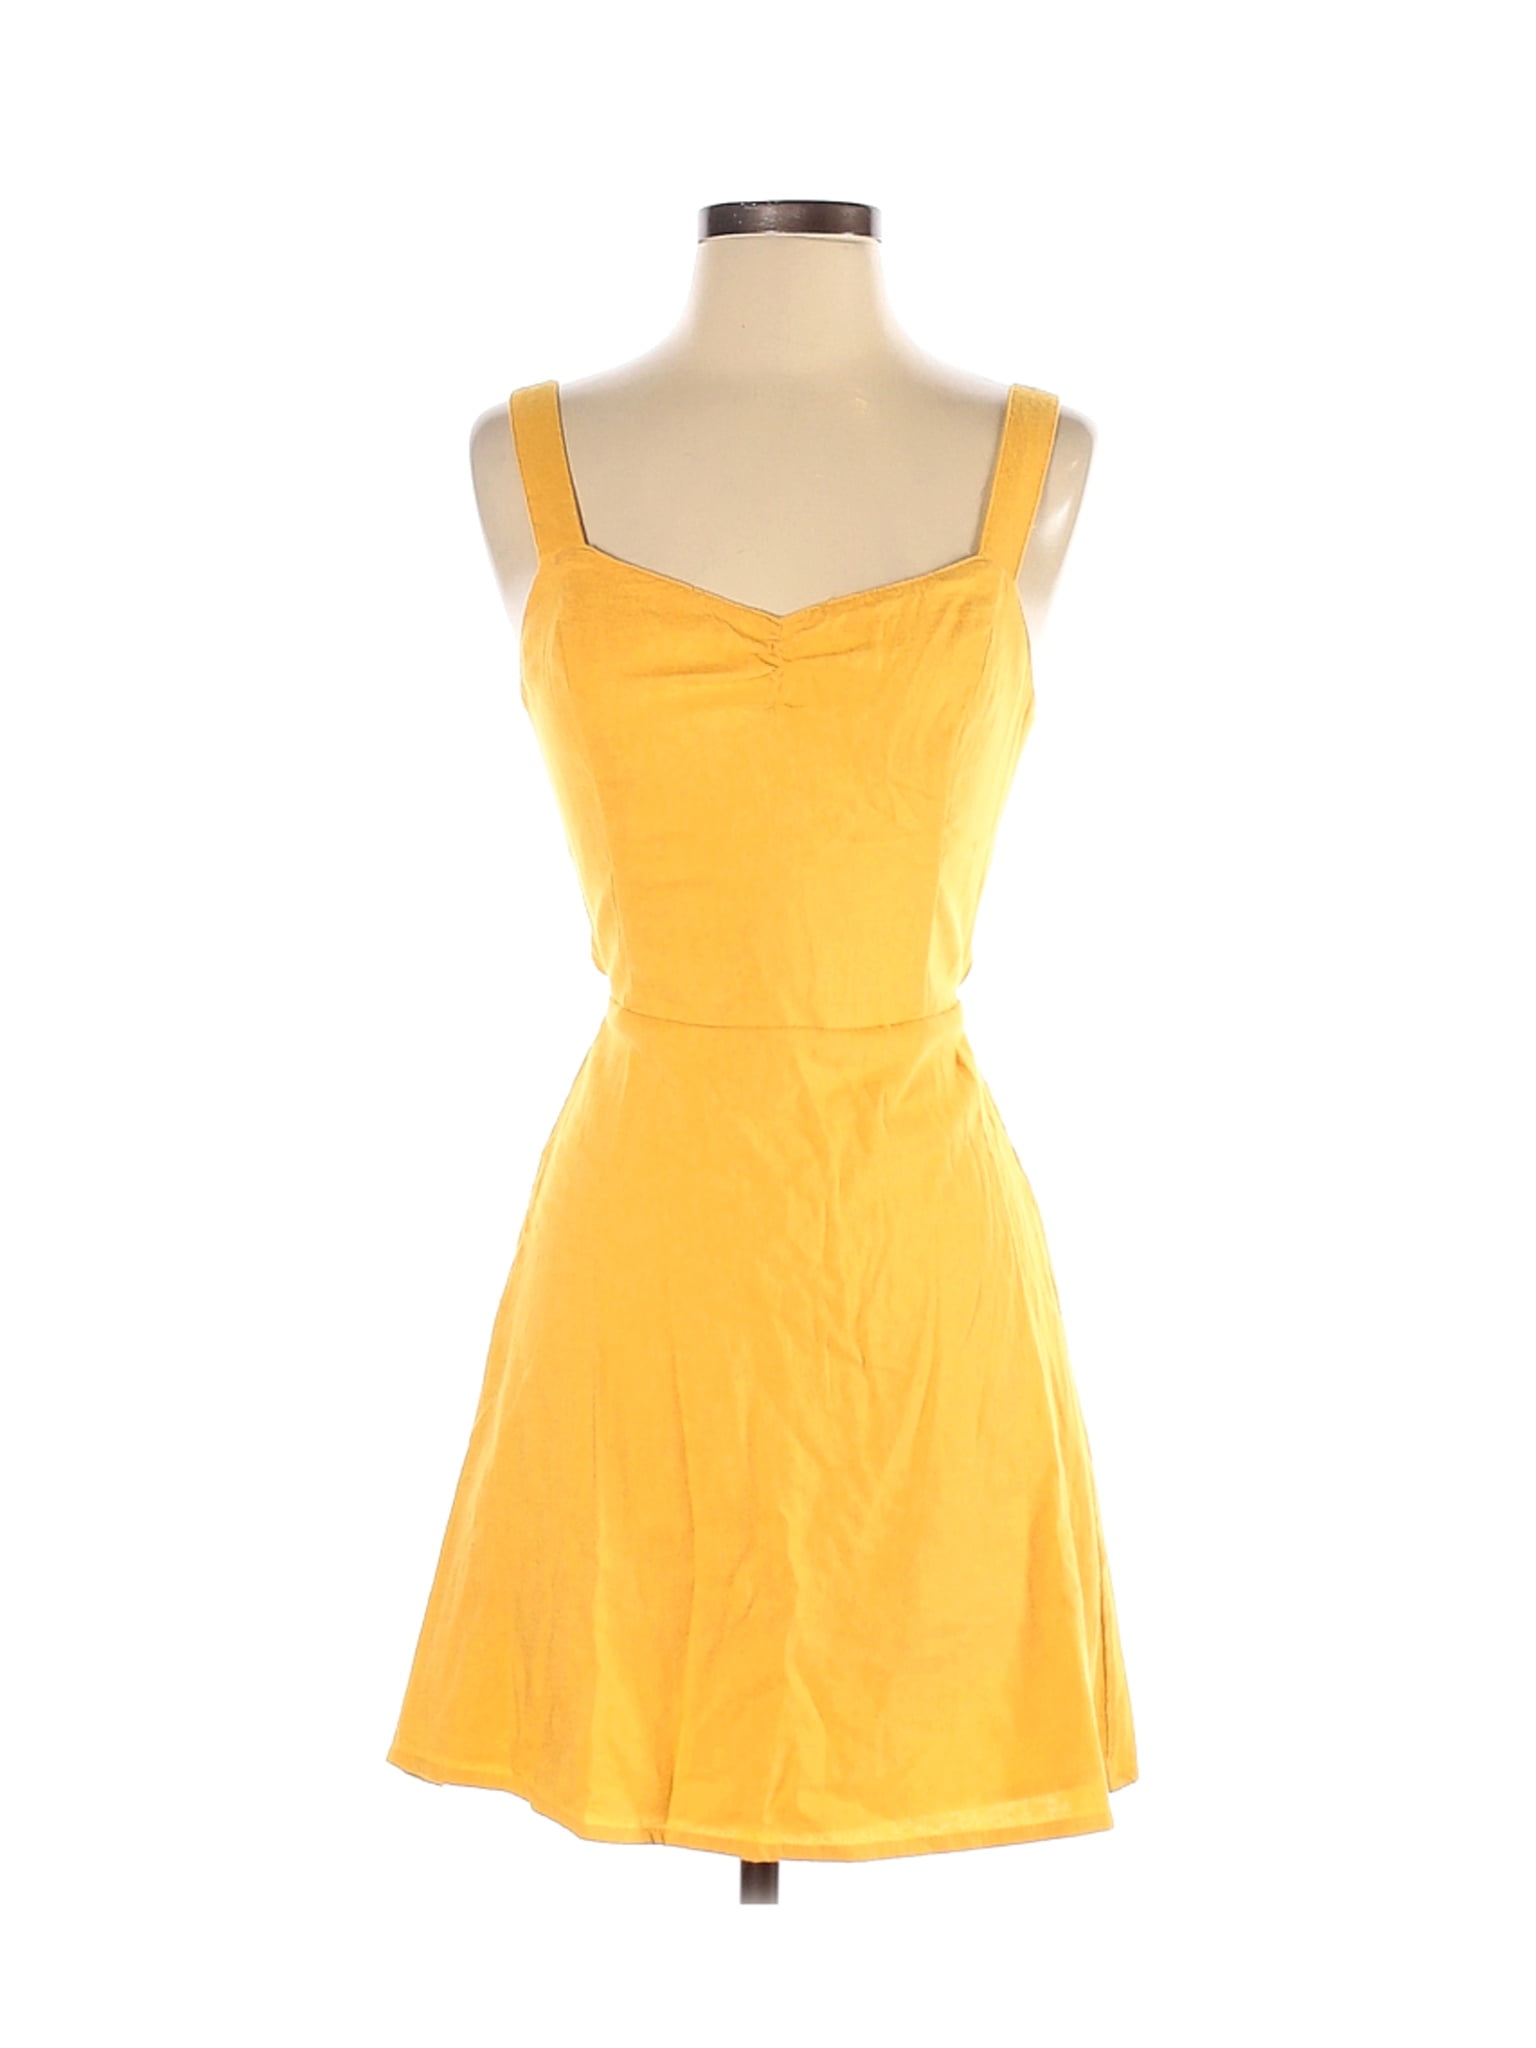 hollister yellow dress